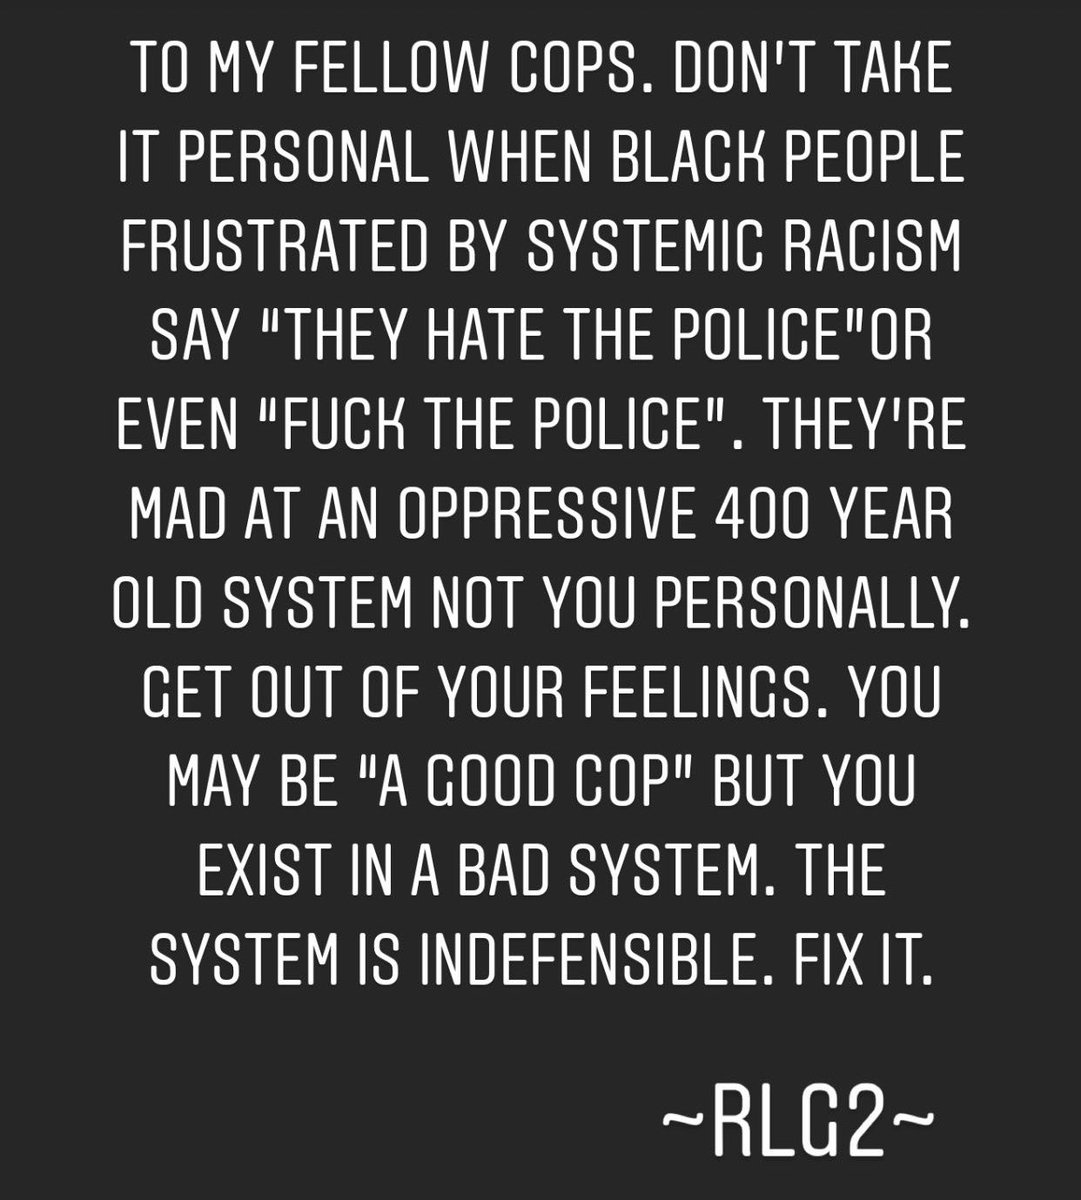 #JusticeForGeorgeFloyd #GeorgeFloyd #BlackLivesMatter #SystemicRacism #DontTakeItPersonal #FixIt